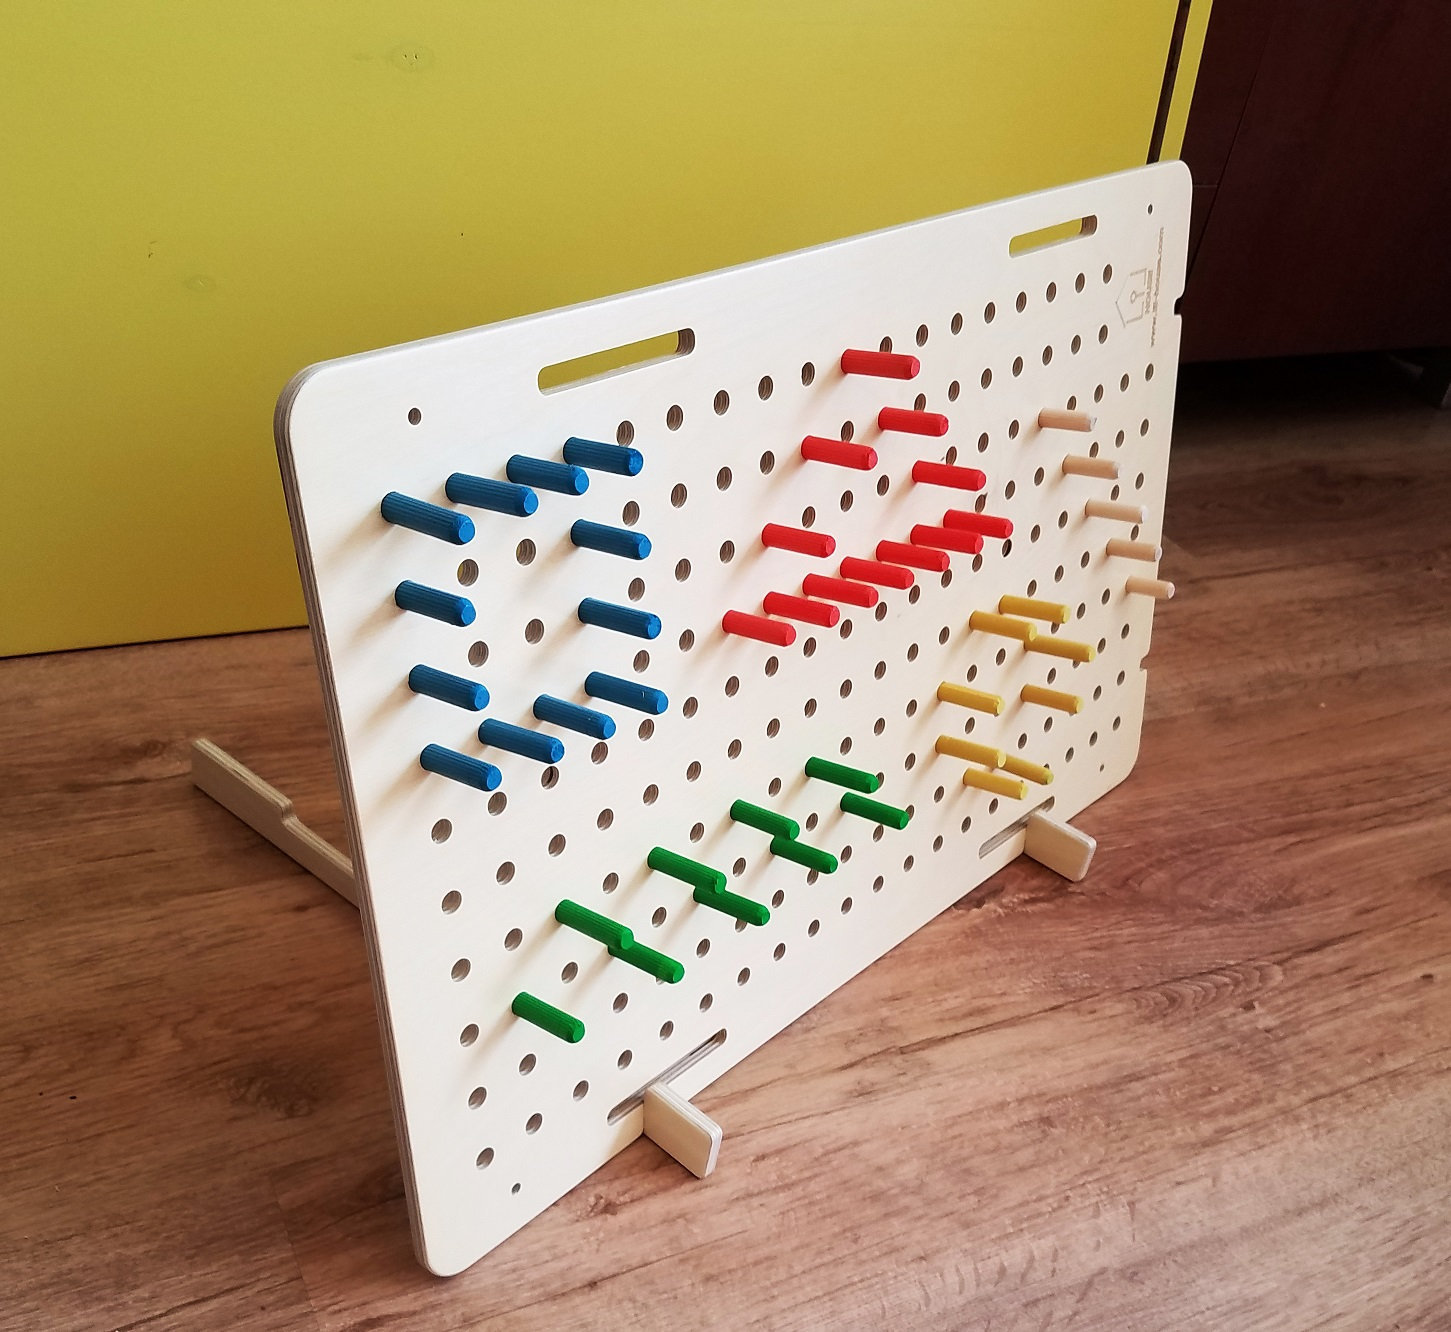 Ensemble de géoplan en bois matériel de manipulation mathématique jouets  éducatifs Montessori jouets tableau bloc géoplan planche de géométrie pour  3